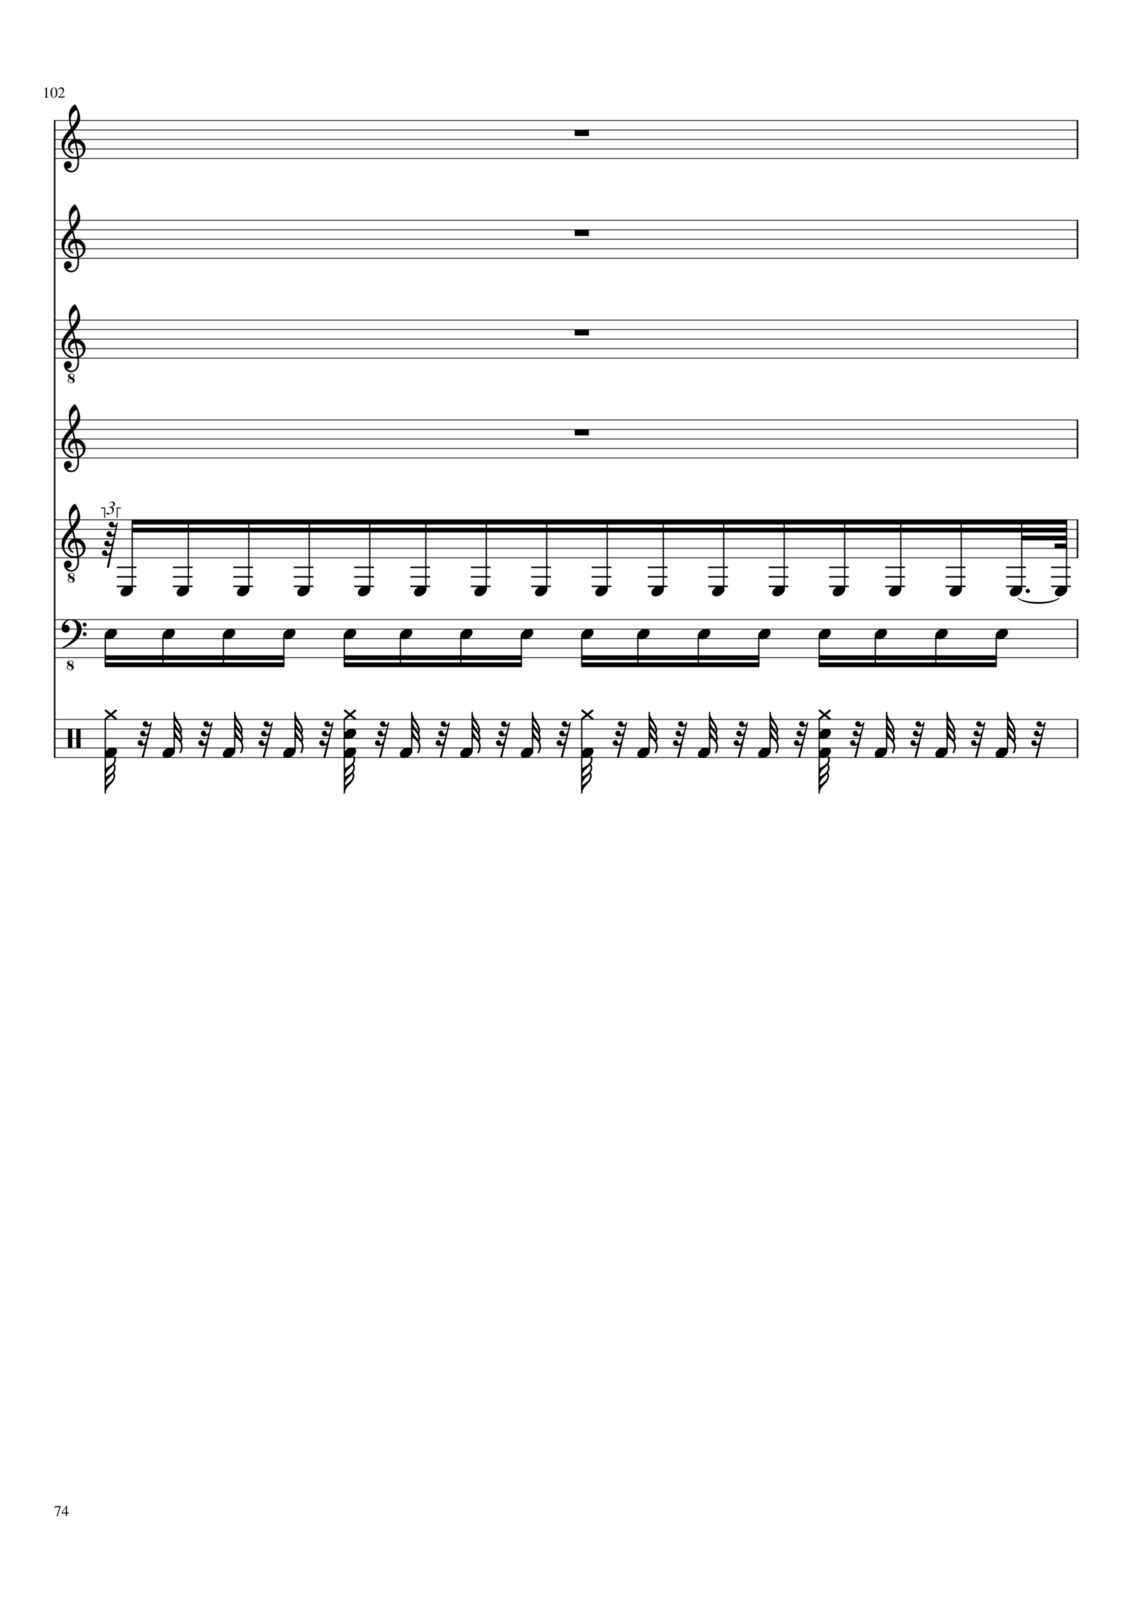 Proschanie s volshebnoy stranoy slide, Image 74